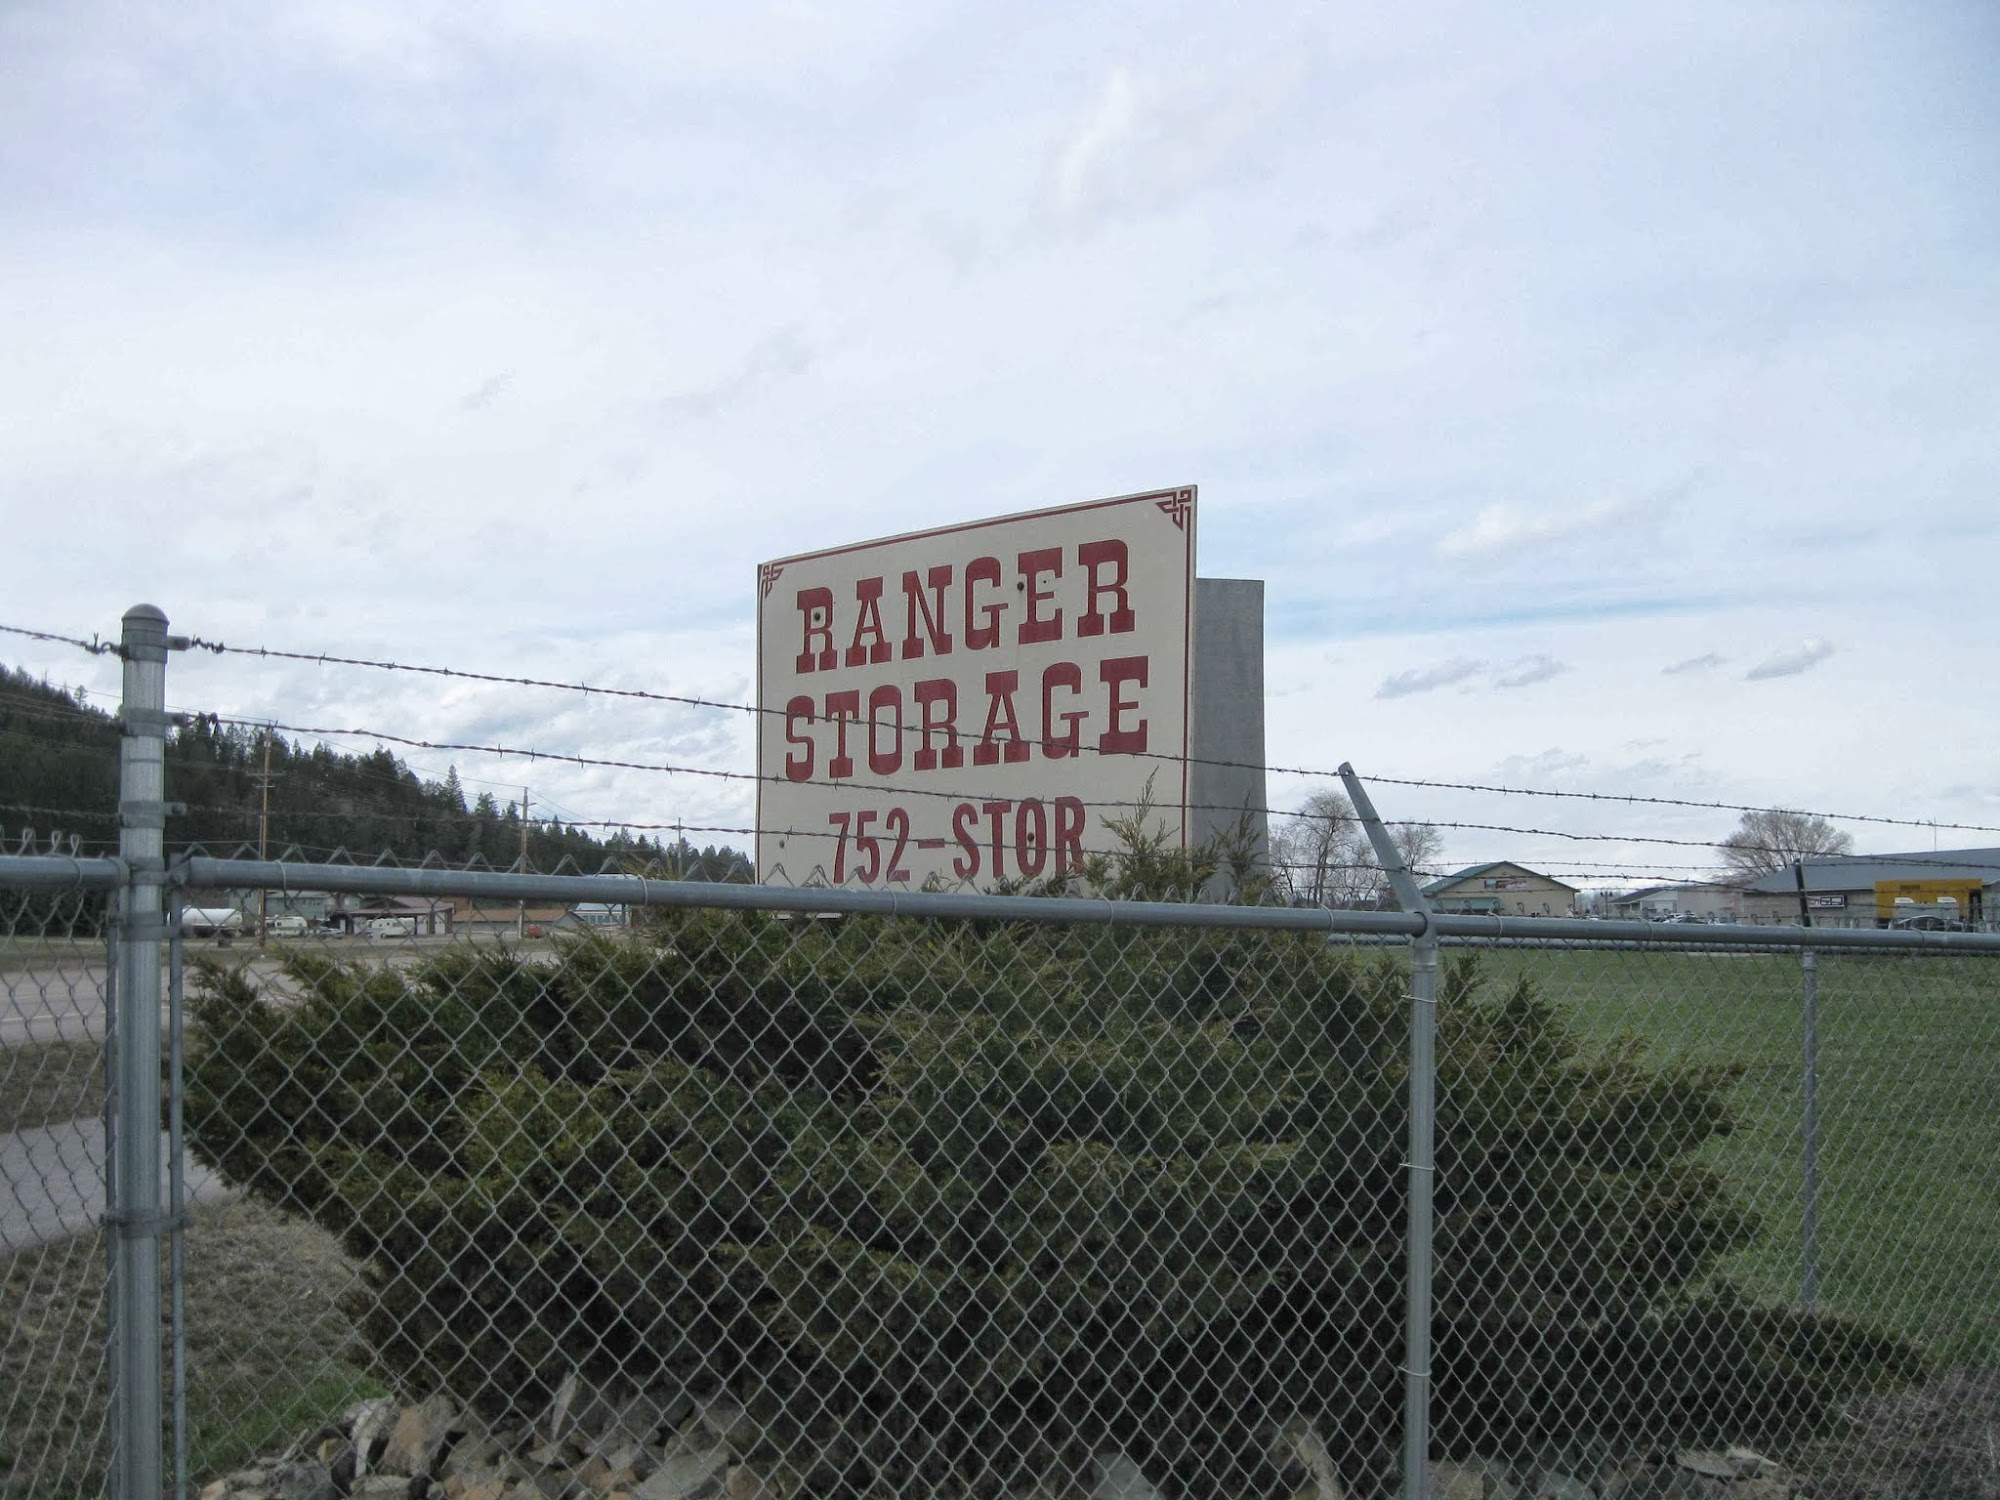 Ranger Storage